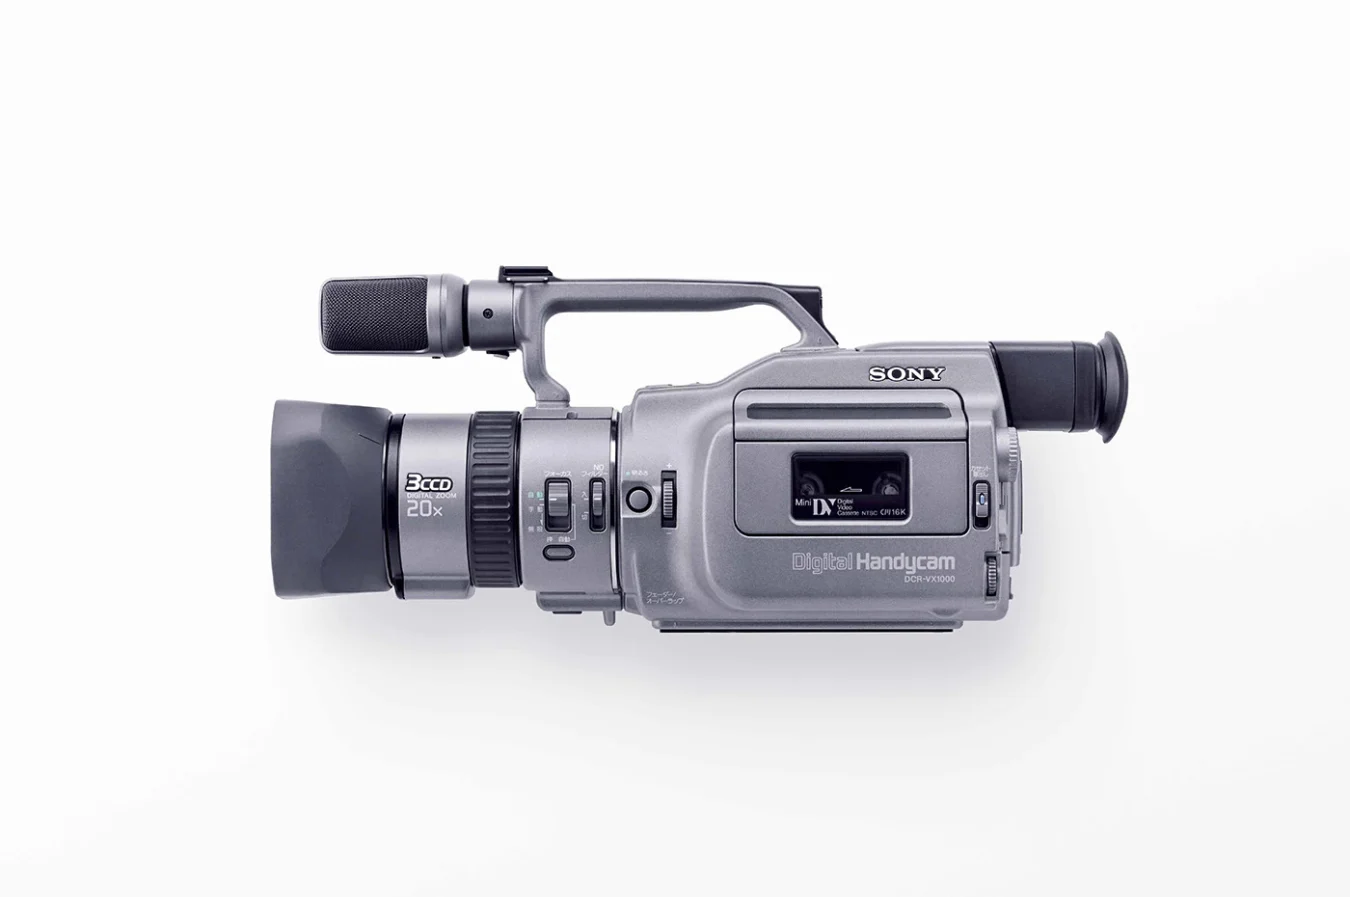 Первая потребительская цифровая видеокамера от Sony, VX1000, изображена на рекламном снимке.